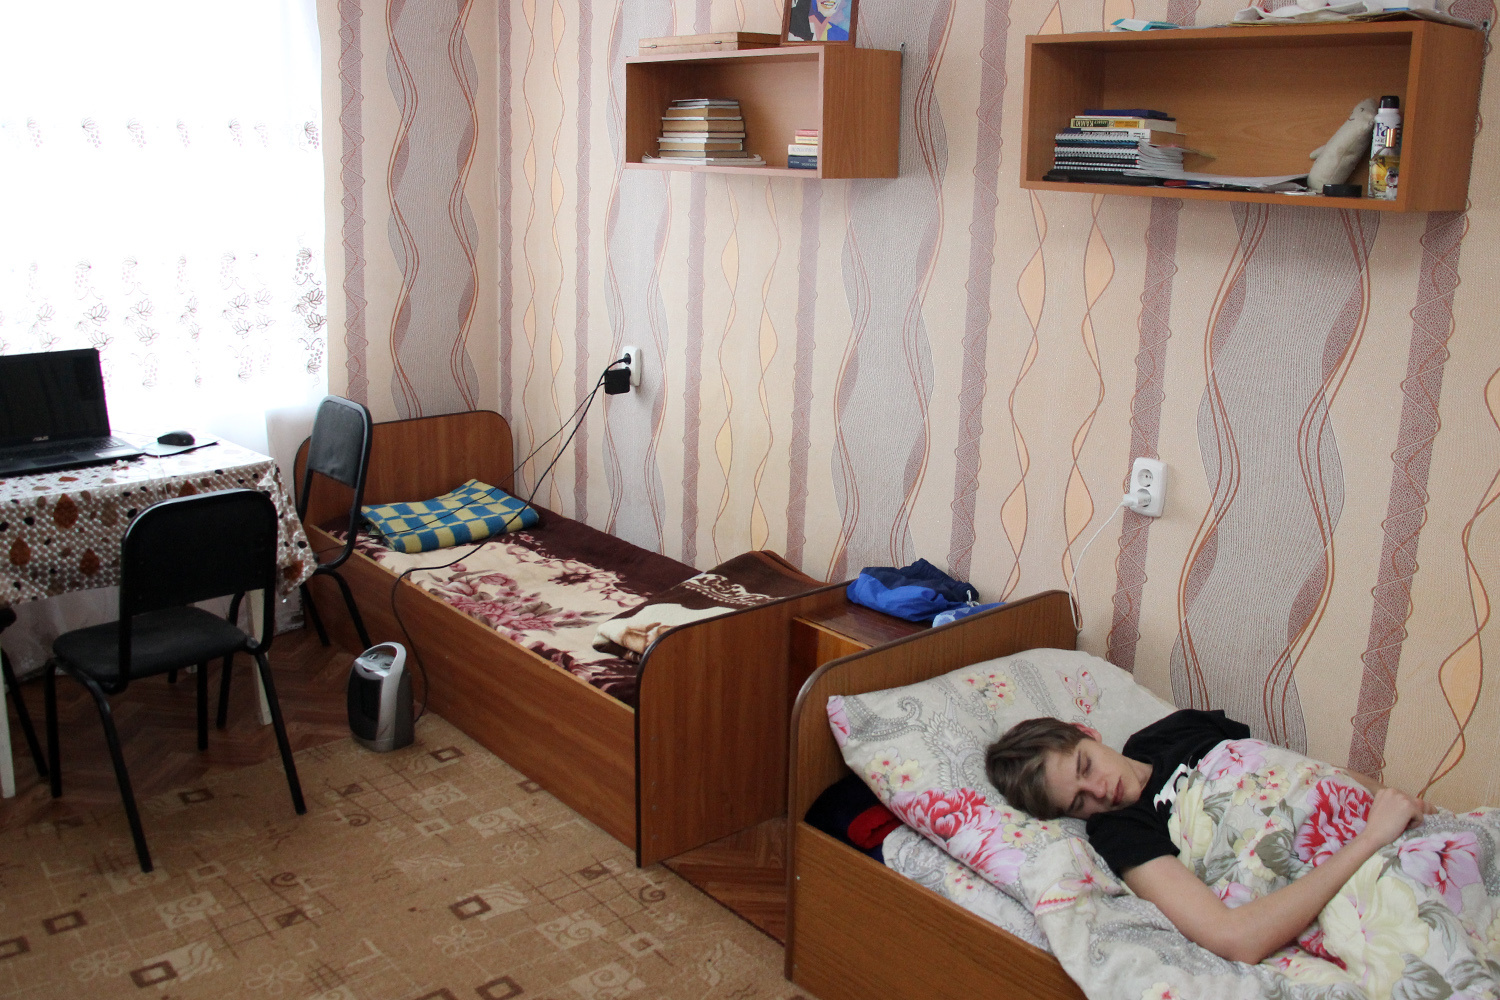 Трёхместная комната юношей, один из которых лег отдыхать после сложного экзамена